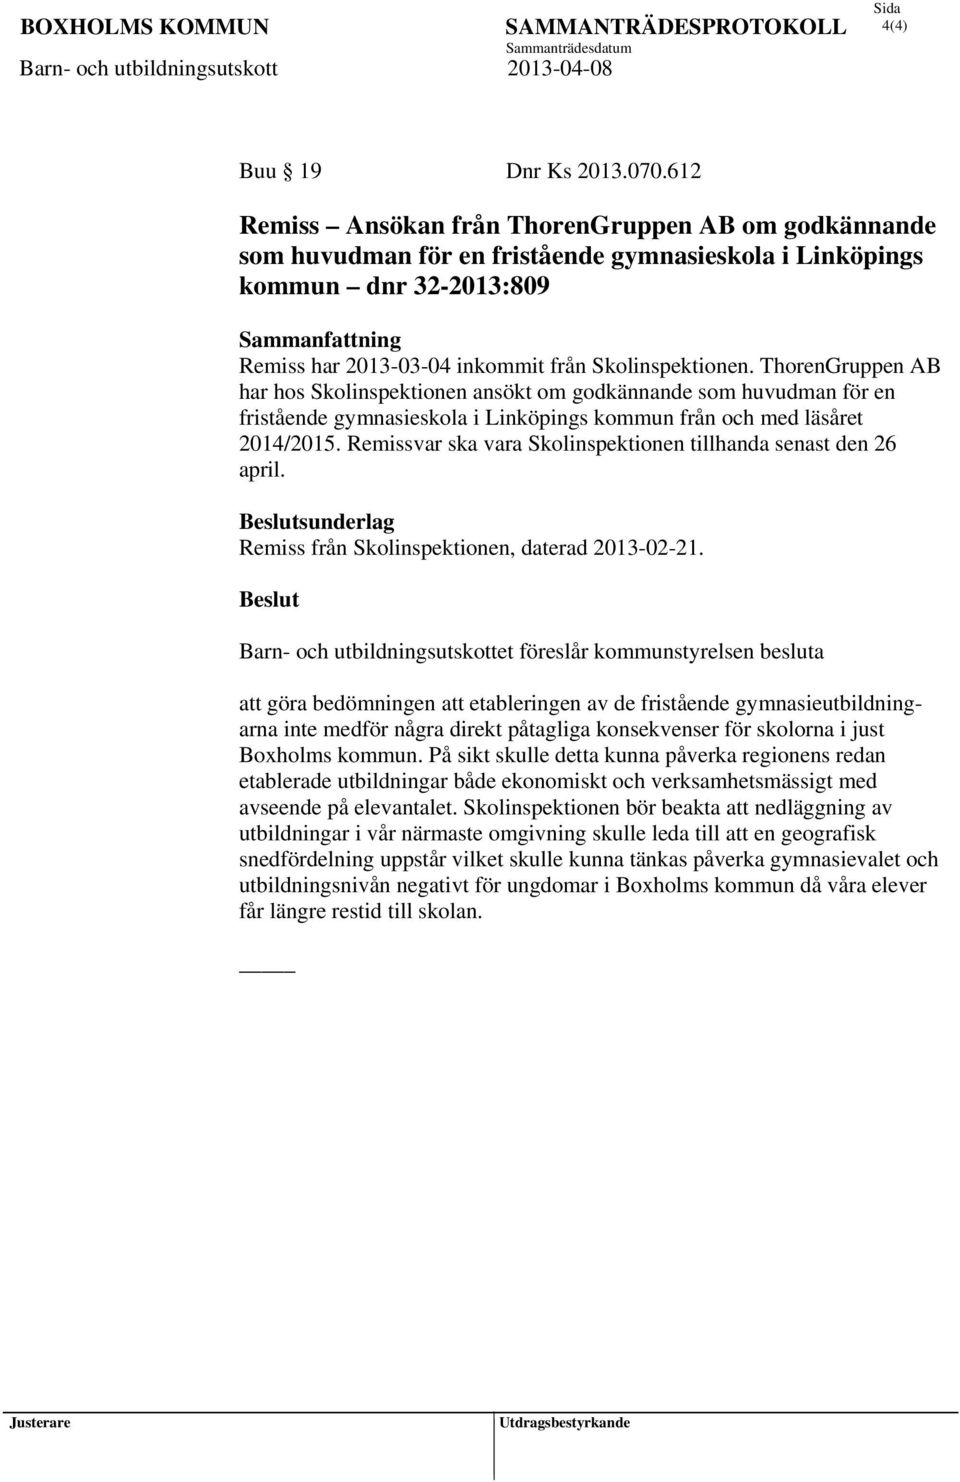 Skolinspektionen. ThorenGruppen AB har hos Skolinspektionen ansökt om godkännande som huvudman för en fristående gymnasieskola i Linköpings kommun från och med läsåret 2014/2015.